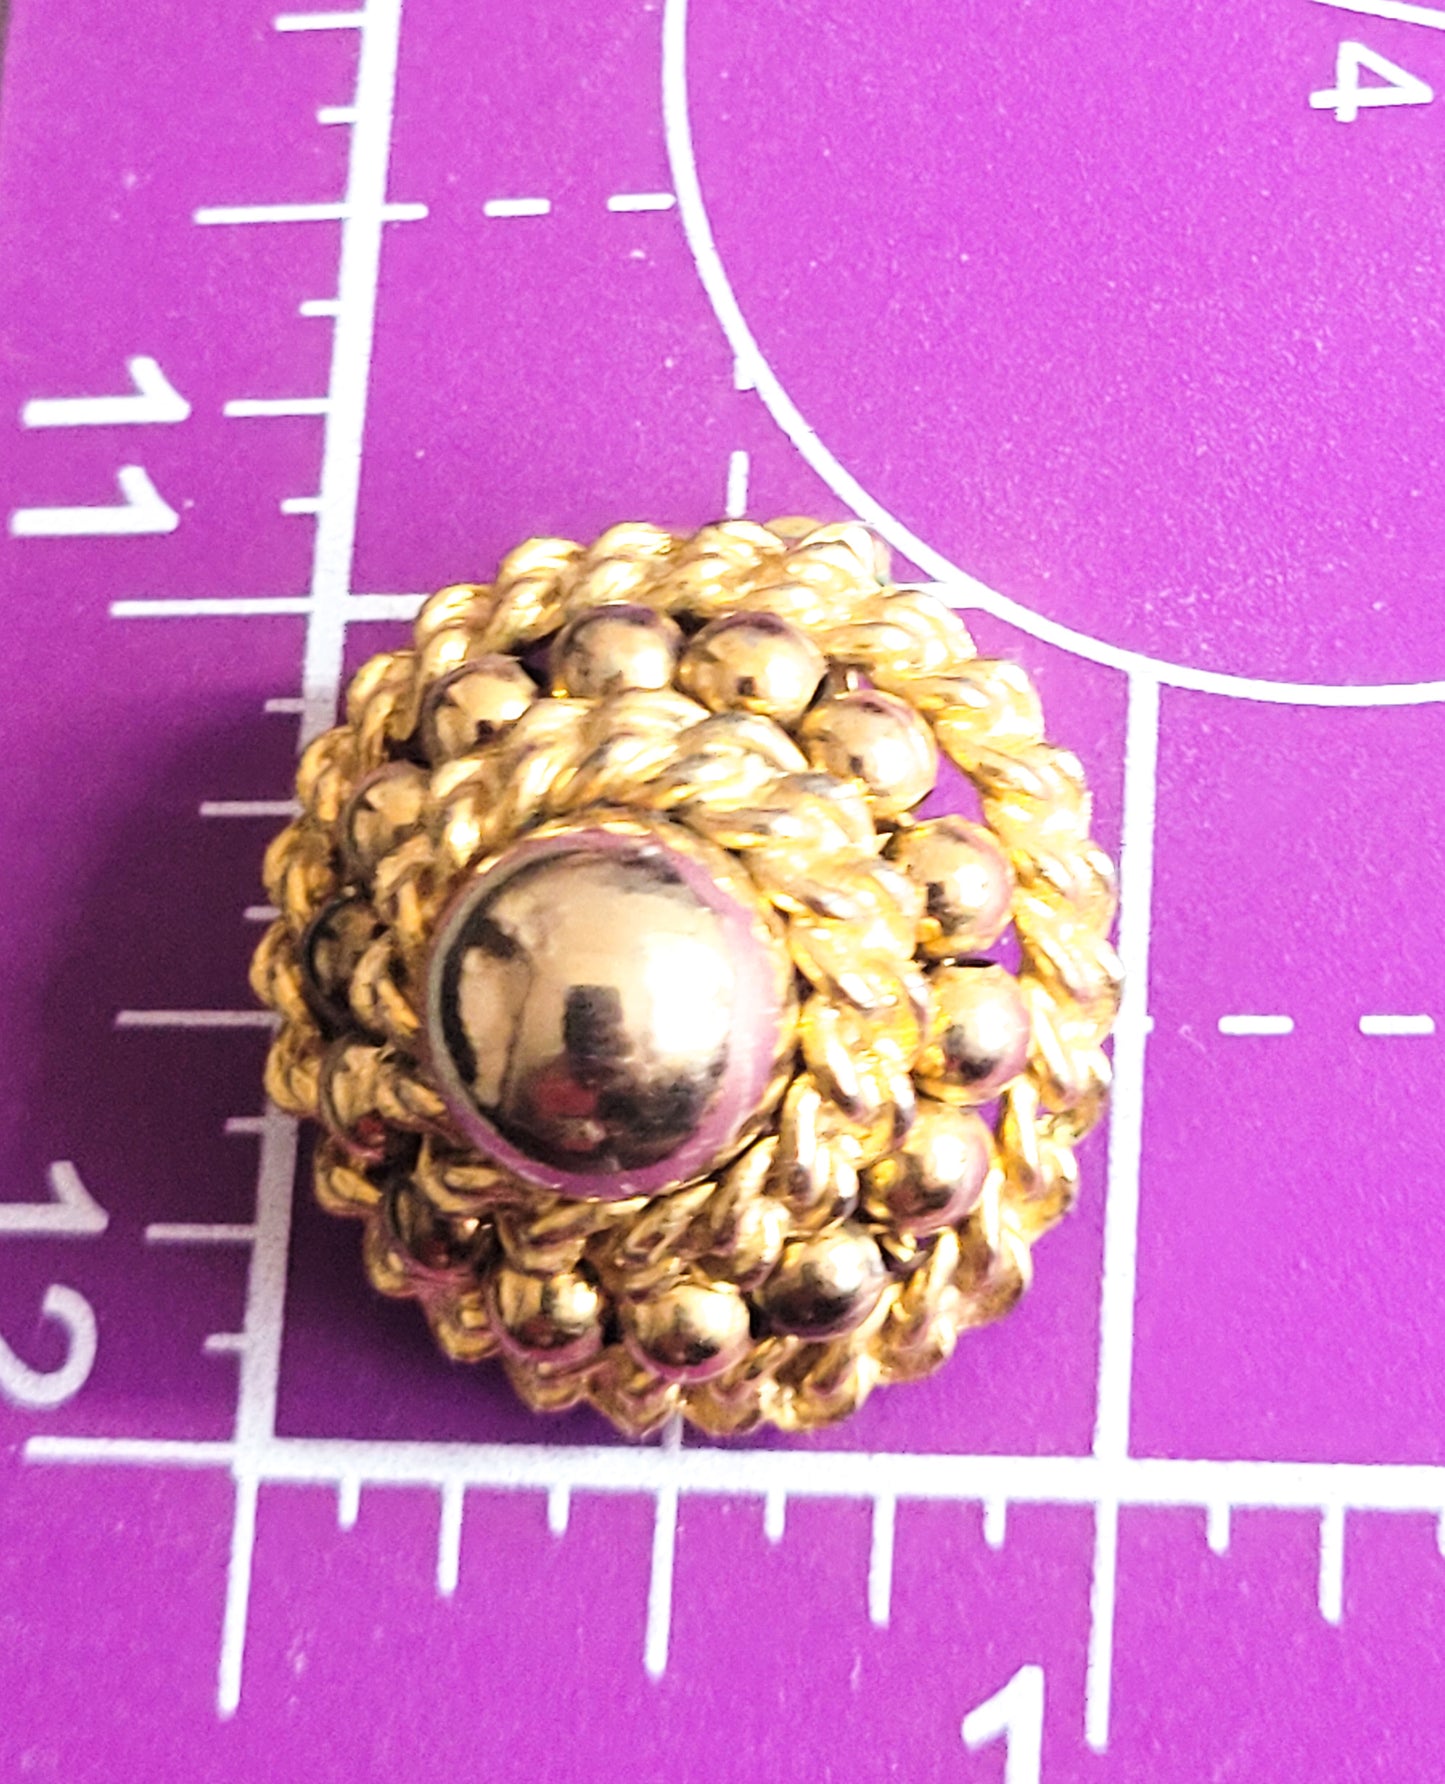 Kramer gold chain domed vintage signed cluster clip on earrings vintage